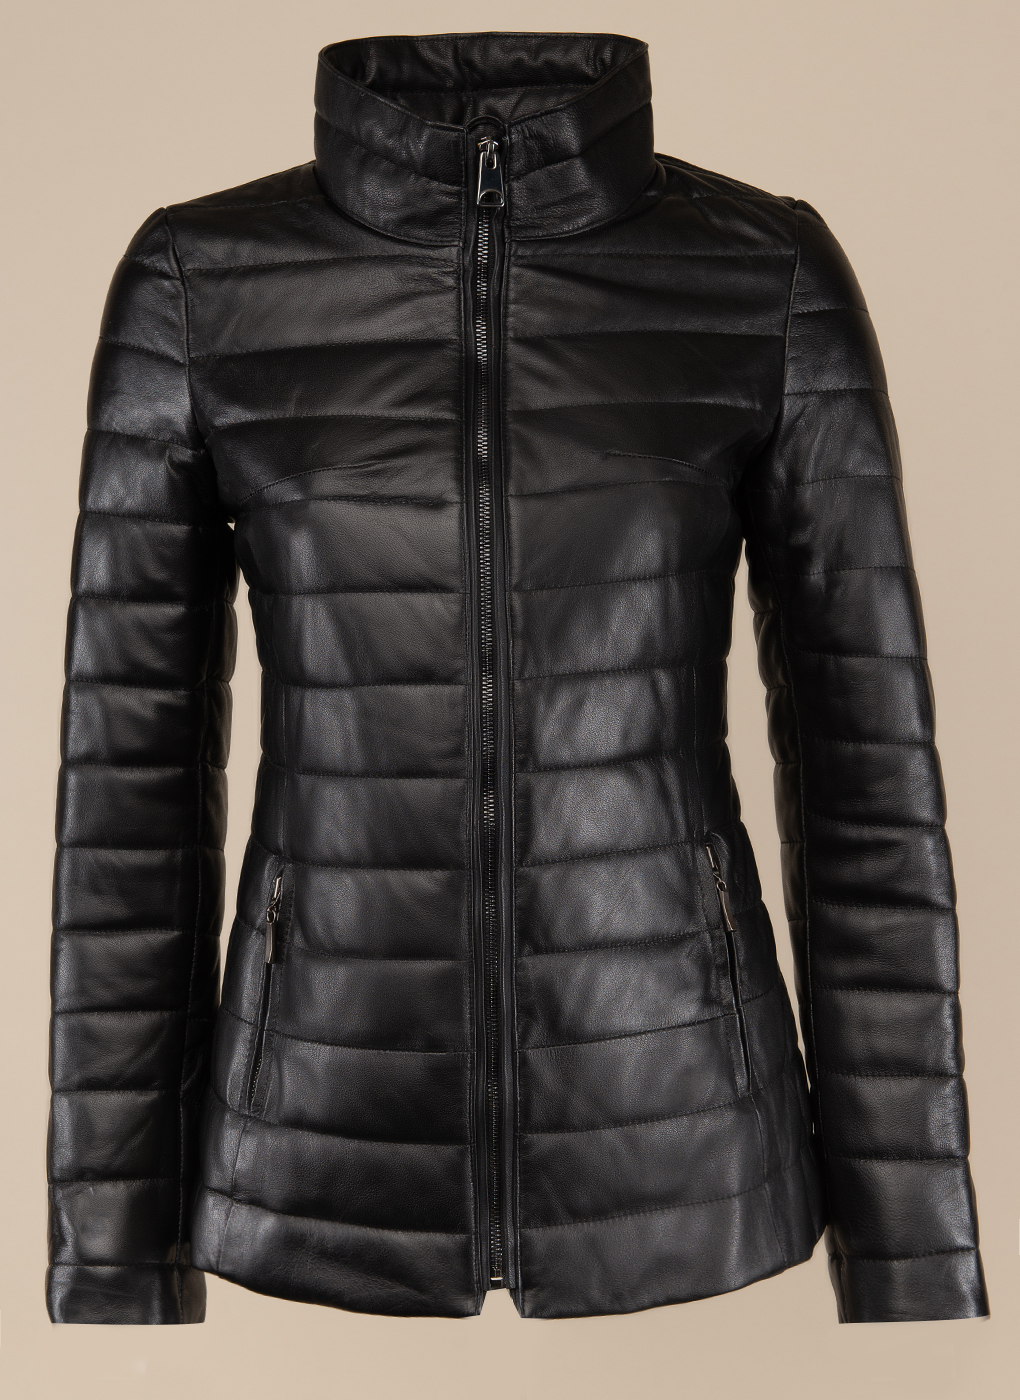 Кожаная куртка женская Каляев 49592 черная 54 RU